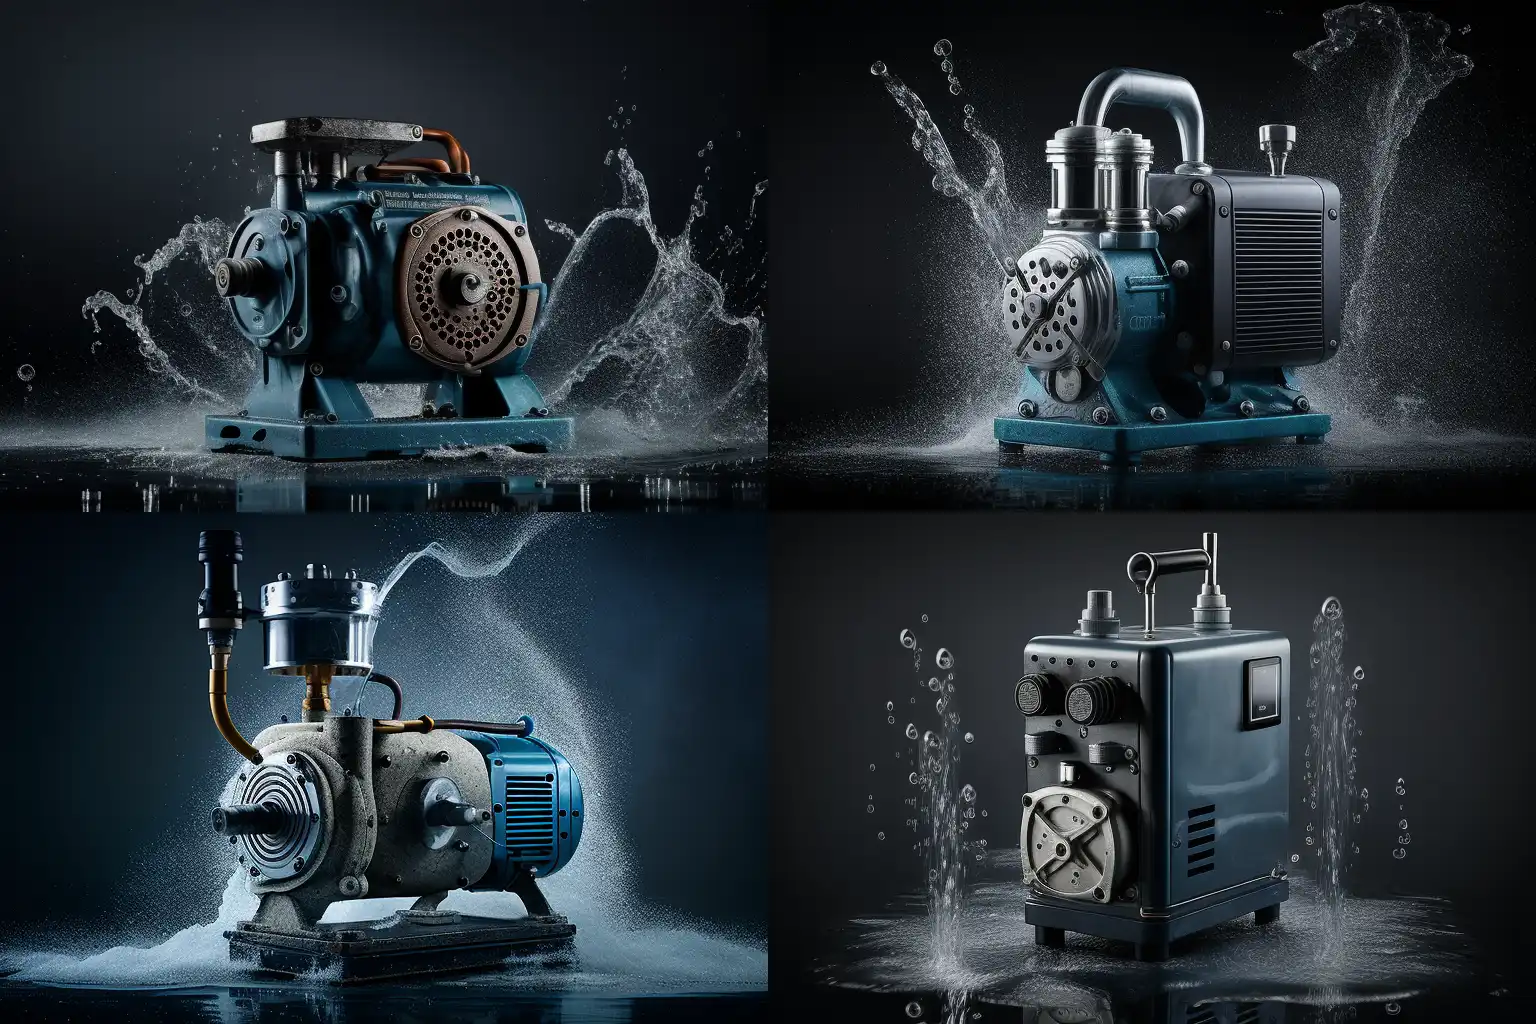 Mit Midjourney erzeugtes Bild einer Pumpe, Studiofotografie, Auswahl aus 4 Bildern